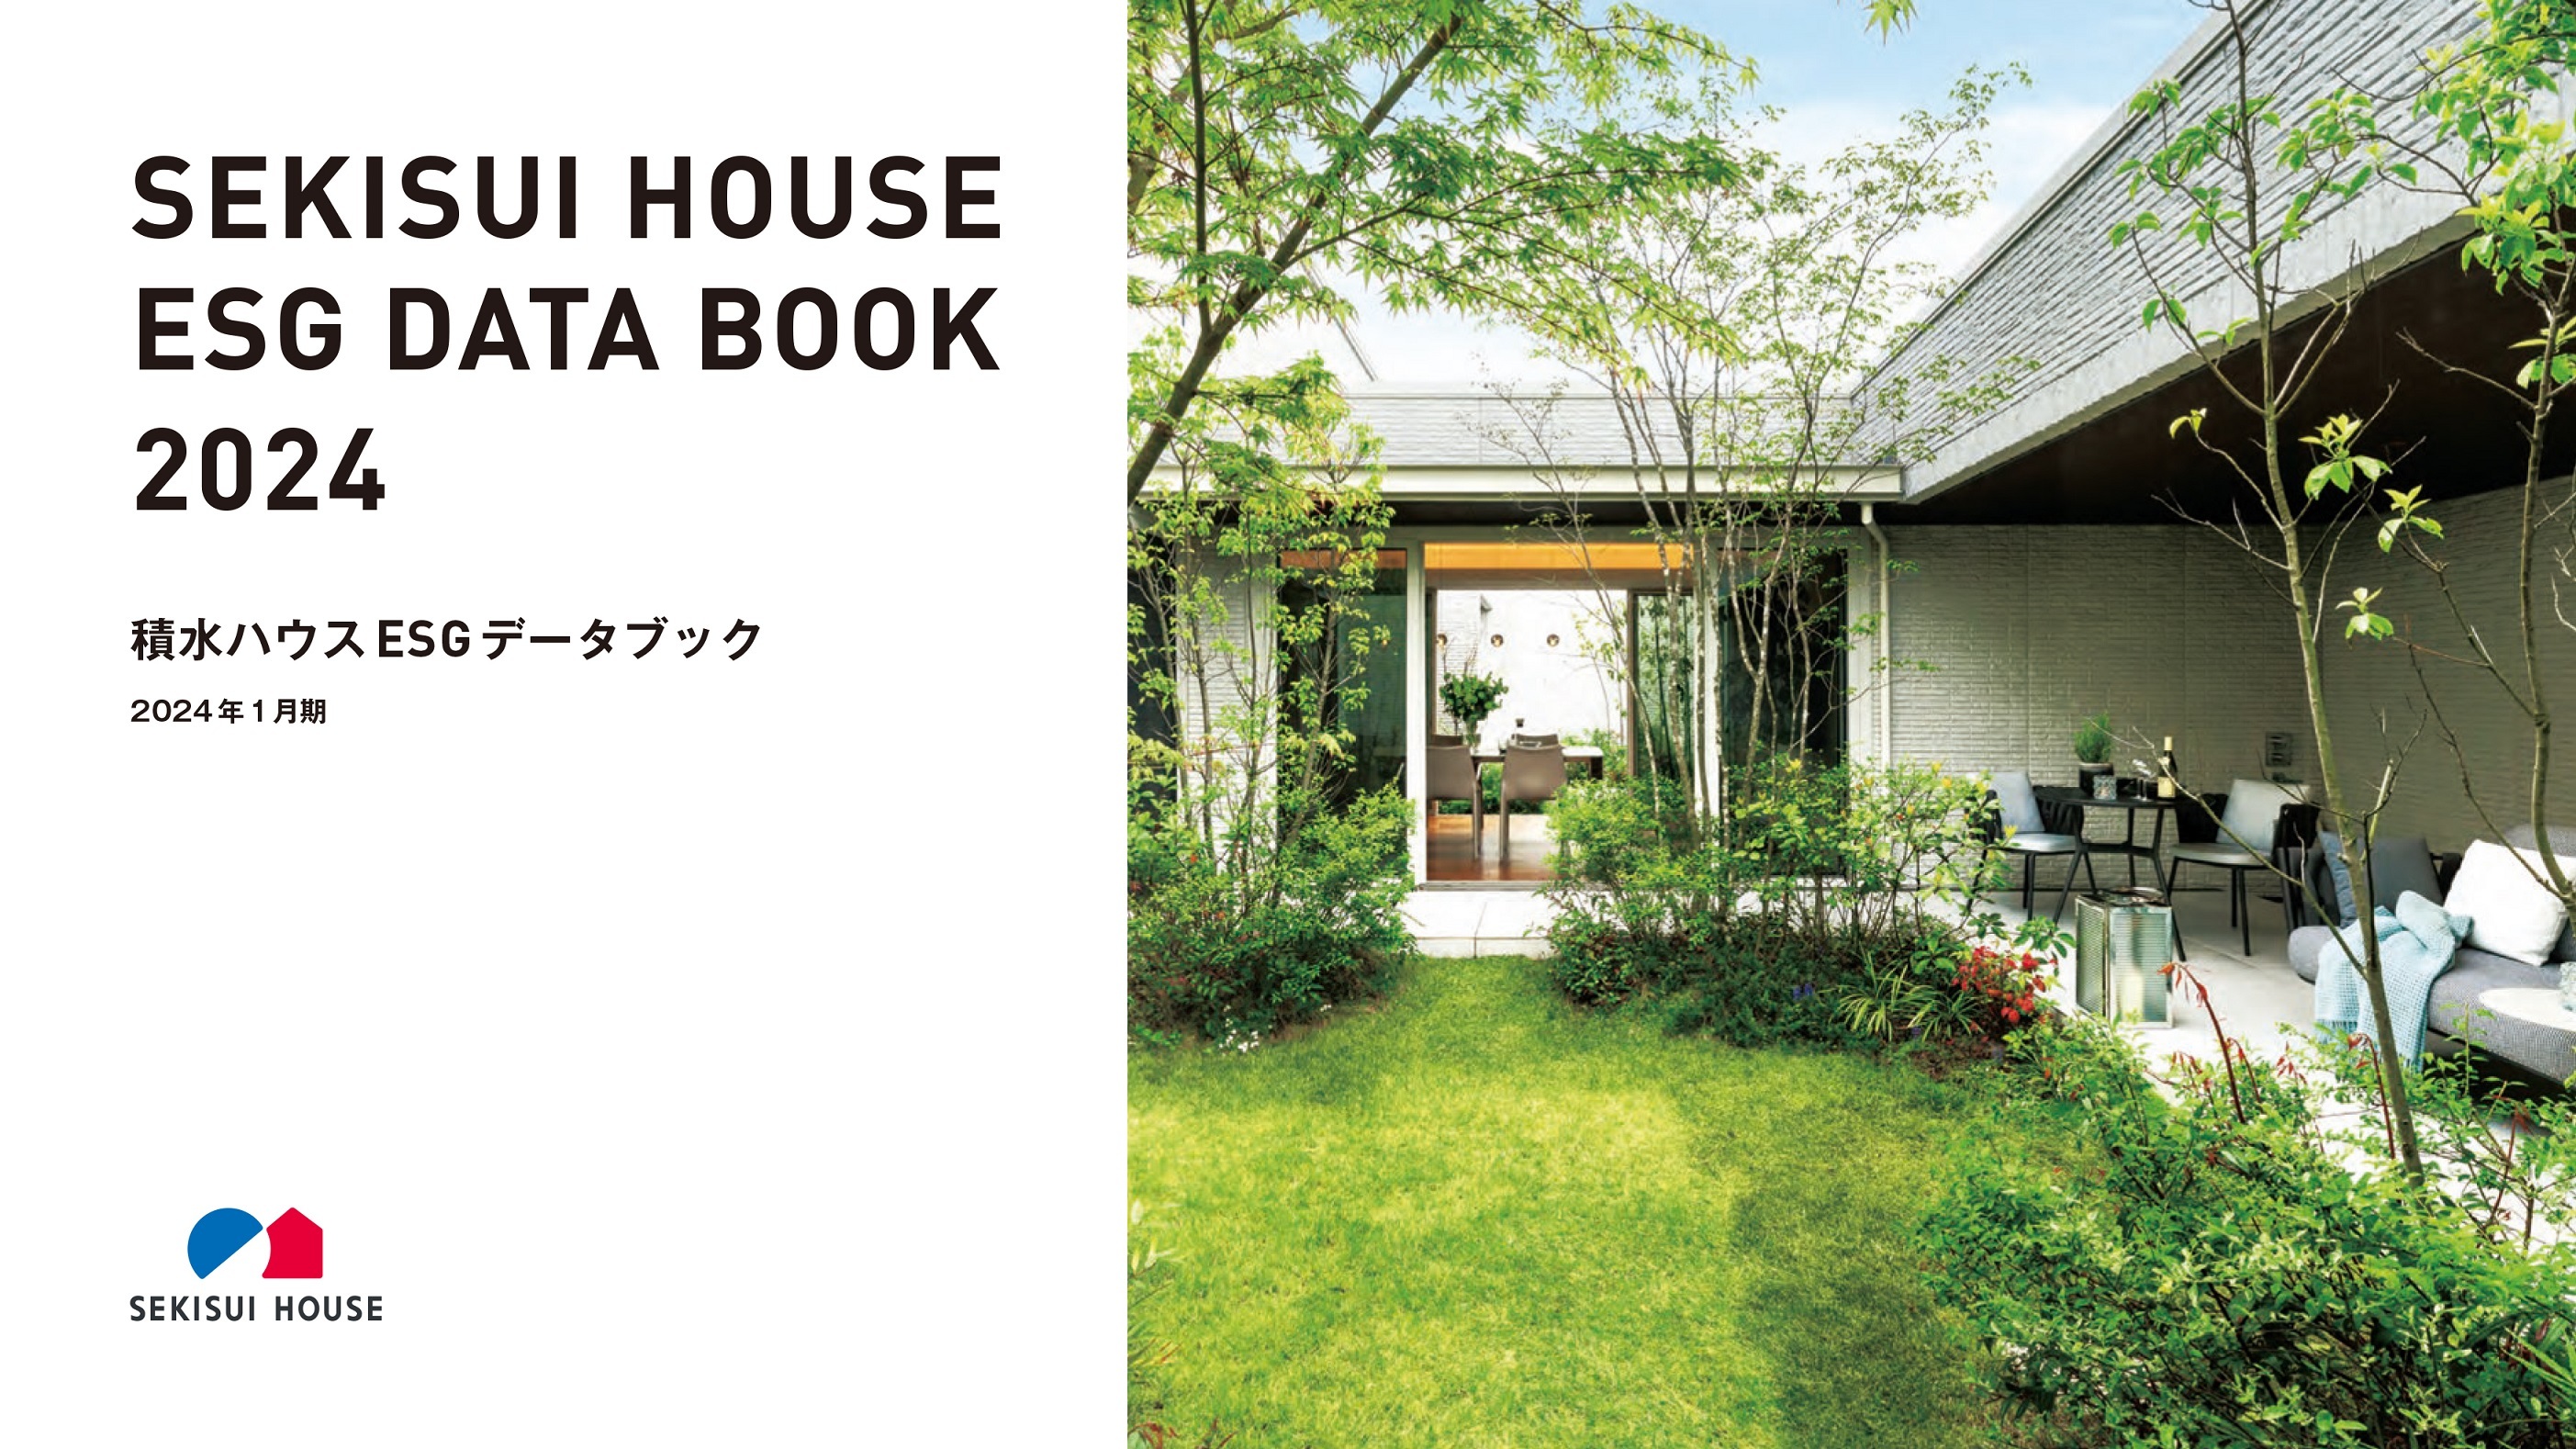 積水ハウス、「SEKISUI HOUSE ESG DATA BOOK 2024」を
有価証券報告書と同時公開 – Net24